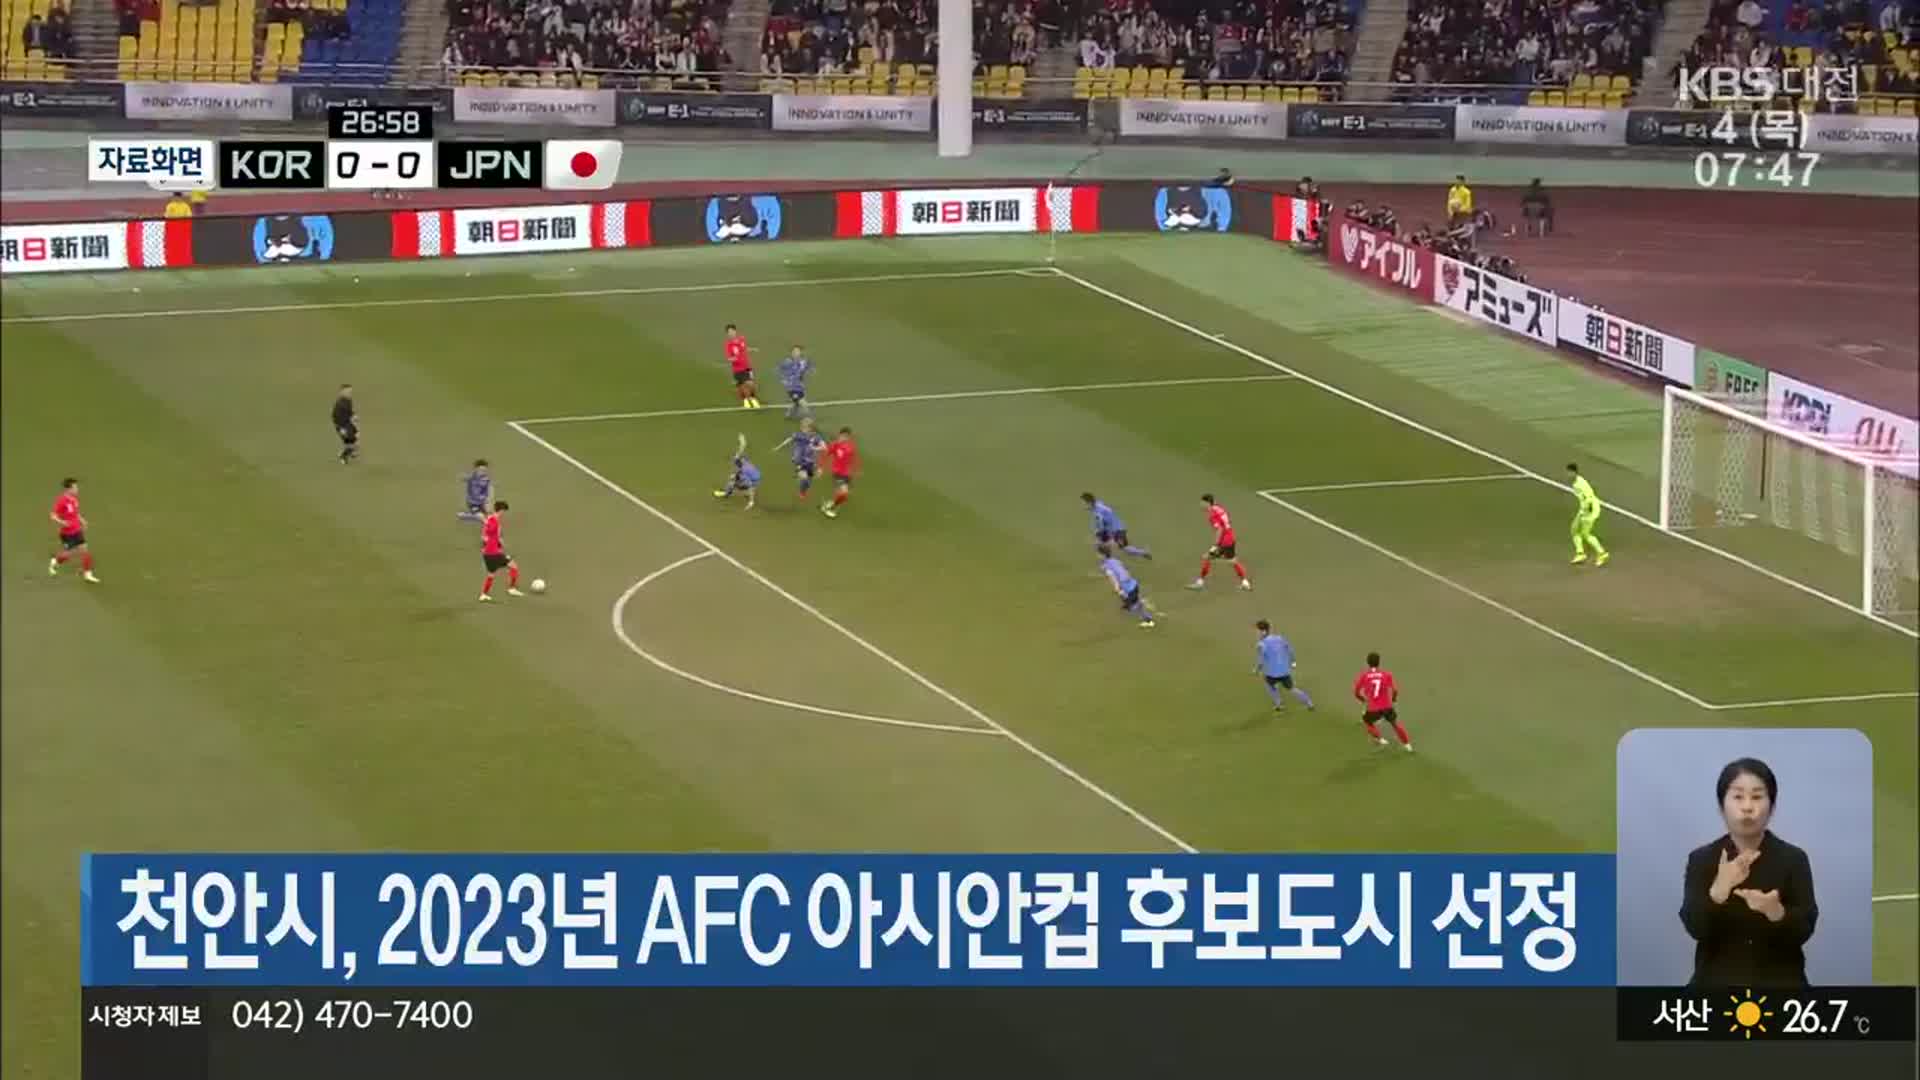 천안시, 2023년 AFC 아시안컵 후보도시 선정